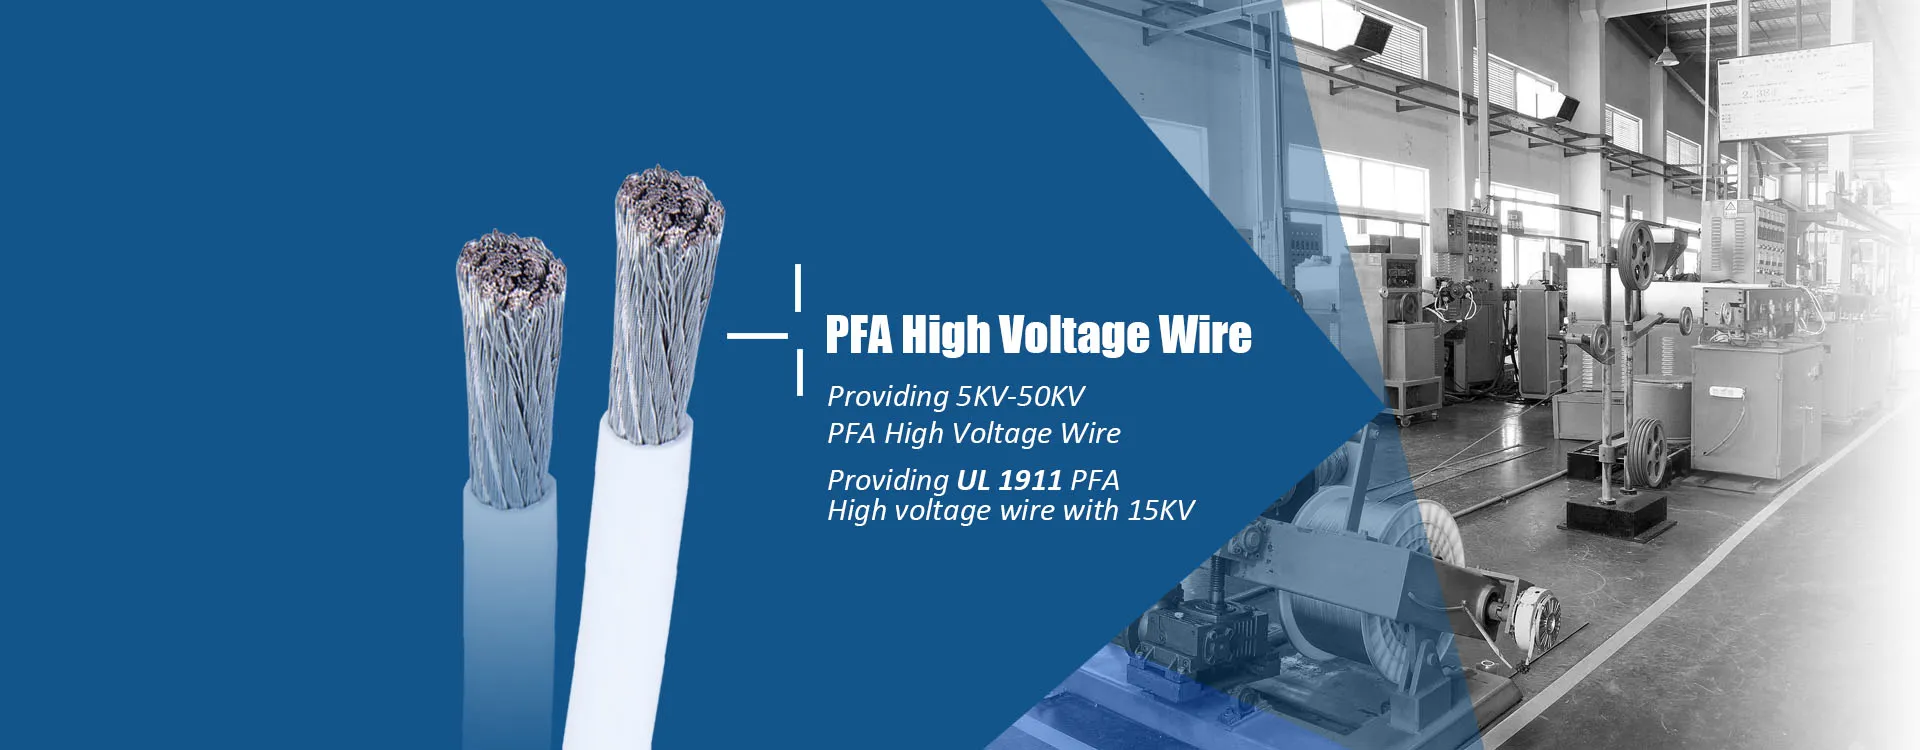 PFA high voltage wire